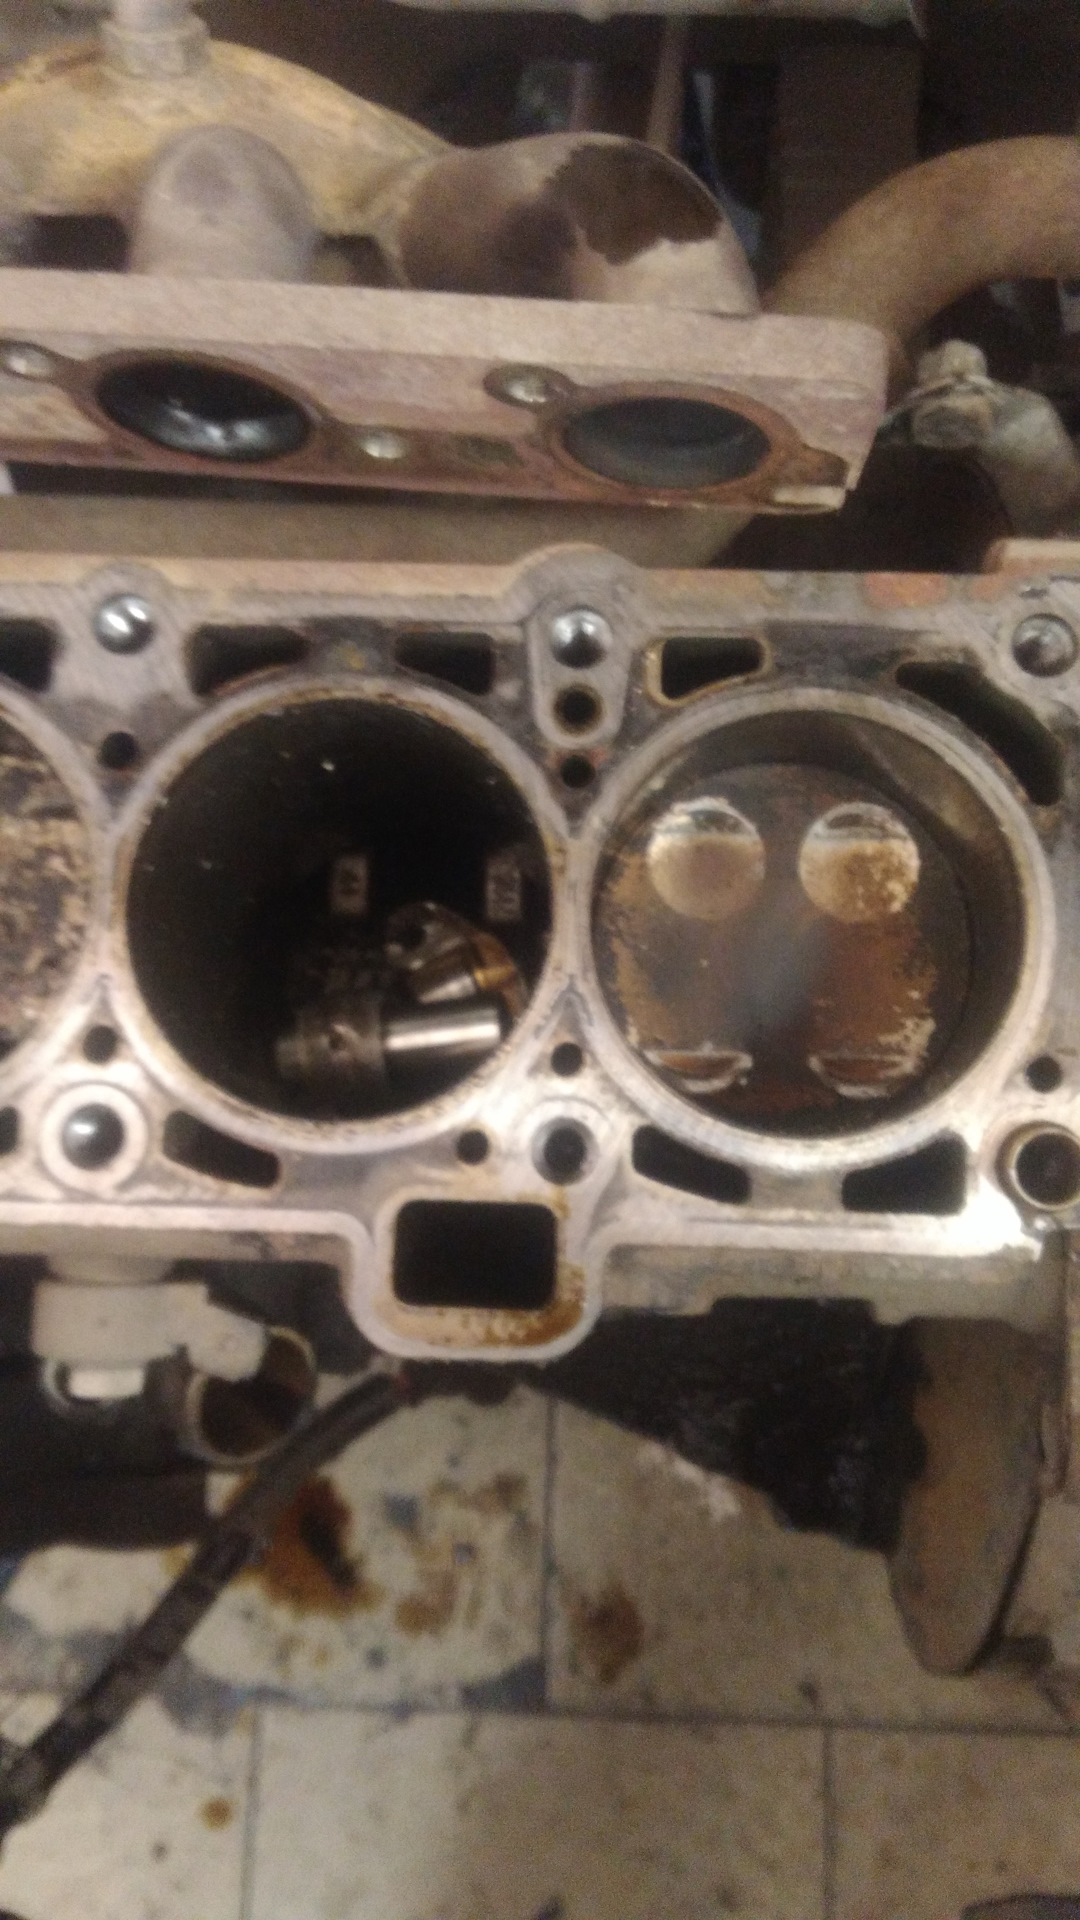 Гнет ли клапана на ладе гранте. Двигатель Гранта 8 клапанов 11186 гнет ли клапана. Погнуло клапана Гранта 8 клапанная. Загнуло клапана Приора 16 клапанов. Погнуло клапана Гранта 8 клап.